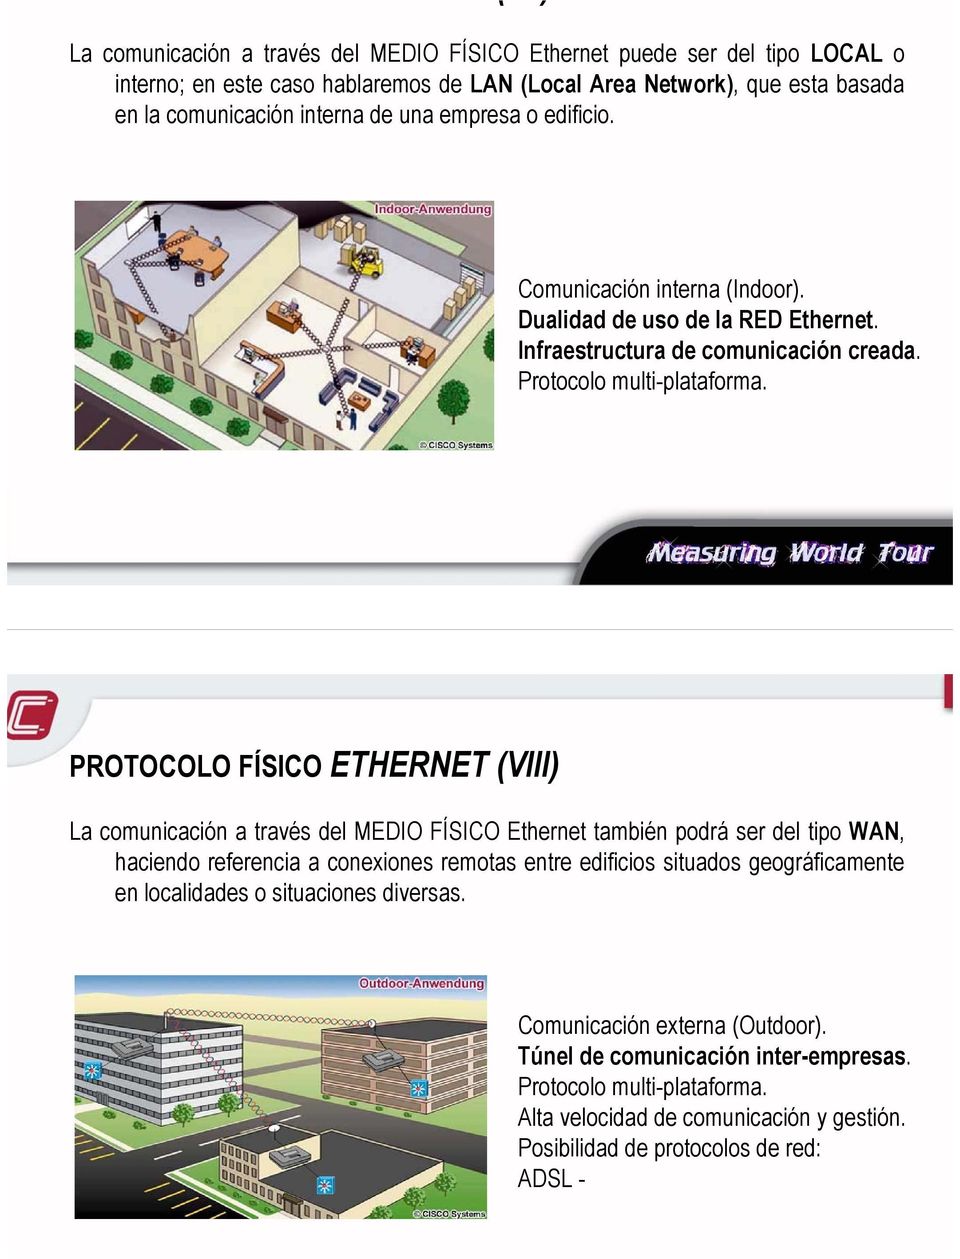 PROTOCOLO FÍSICO ETHERNET (VIII) La comunicación a través del MEDIO FÍSICO Ethernet también podrá ser del tipo WAN, haciendo referencia a conexiones remotas entre edificios situados